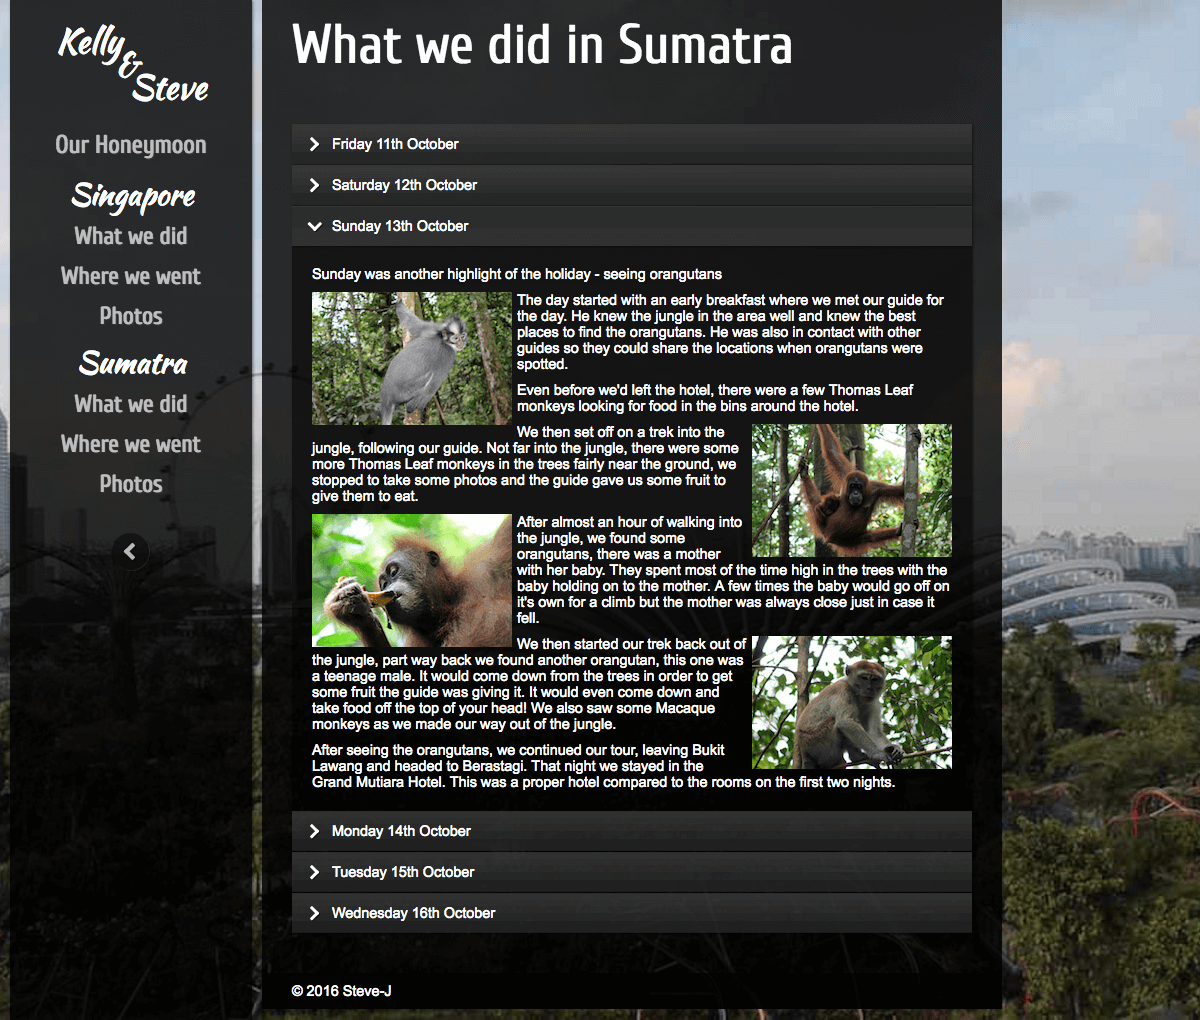 HONEYMOON WEBSITE - WHAT WE DID IN SUMATRA